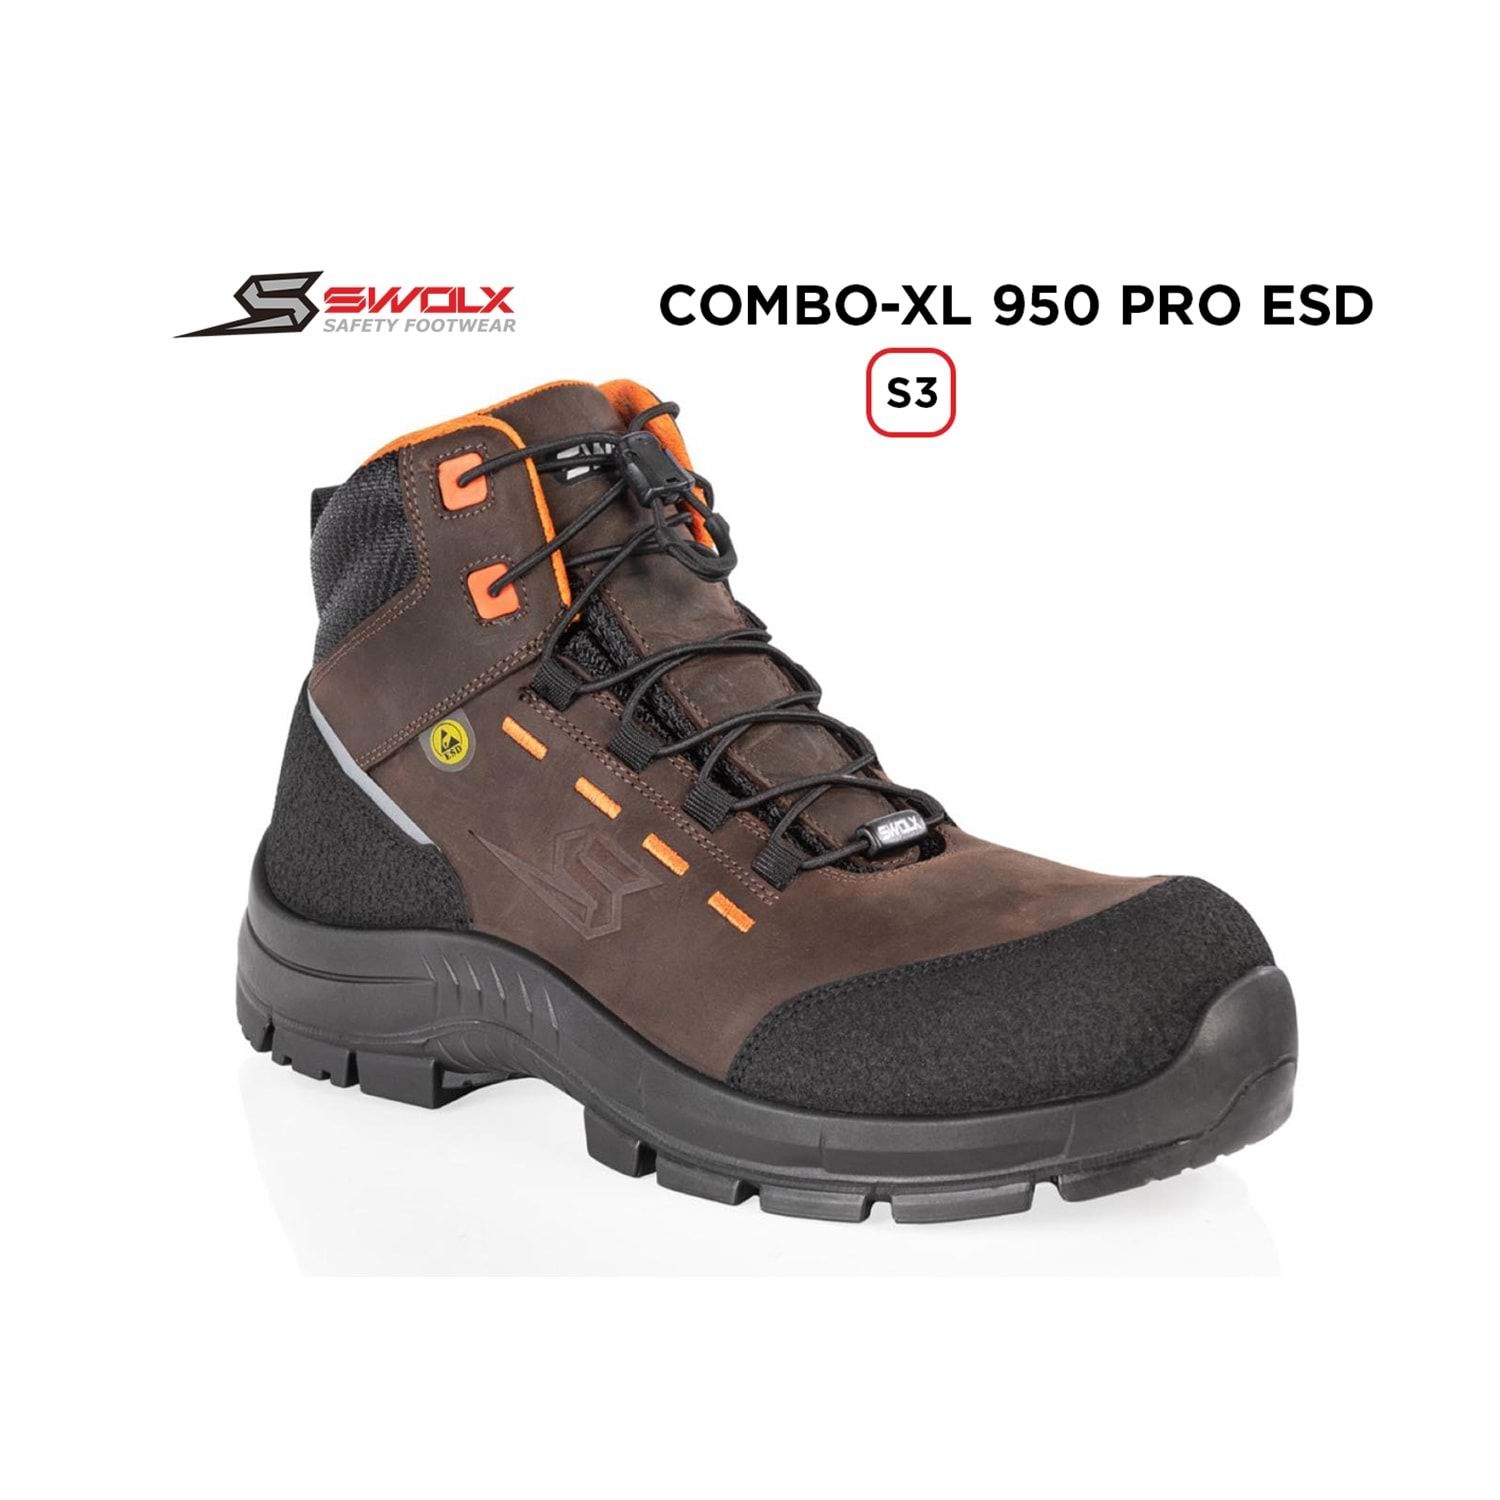 Swolx combo xl pro 950 esd s3 iş ayakkabısı